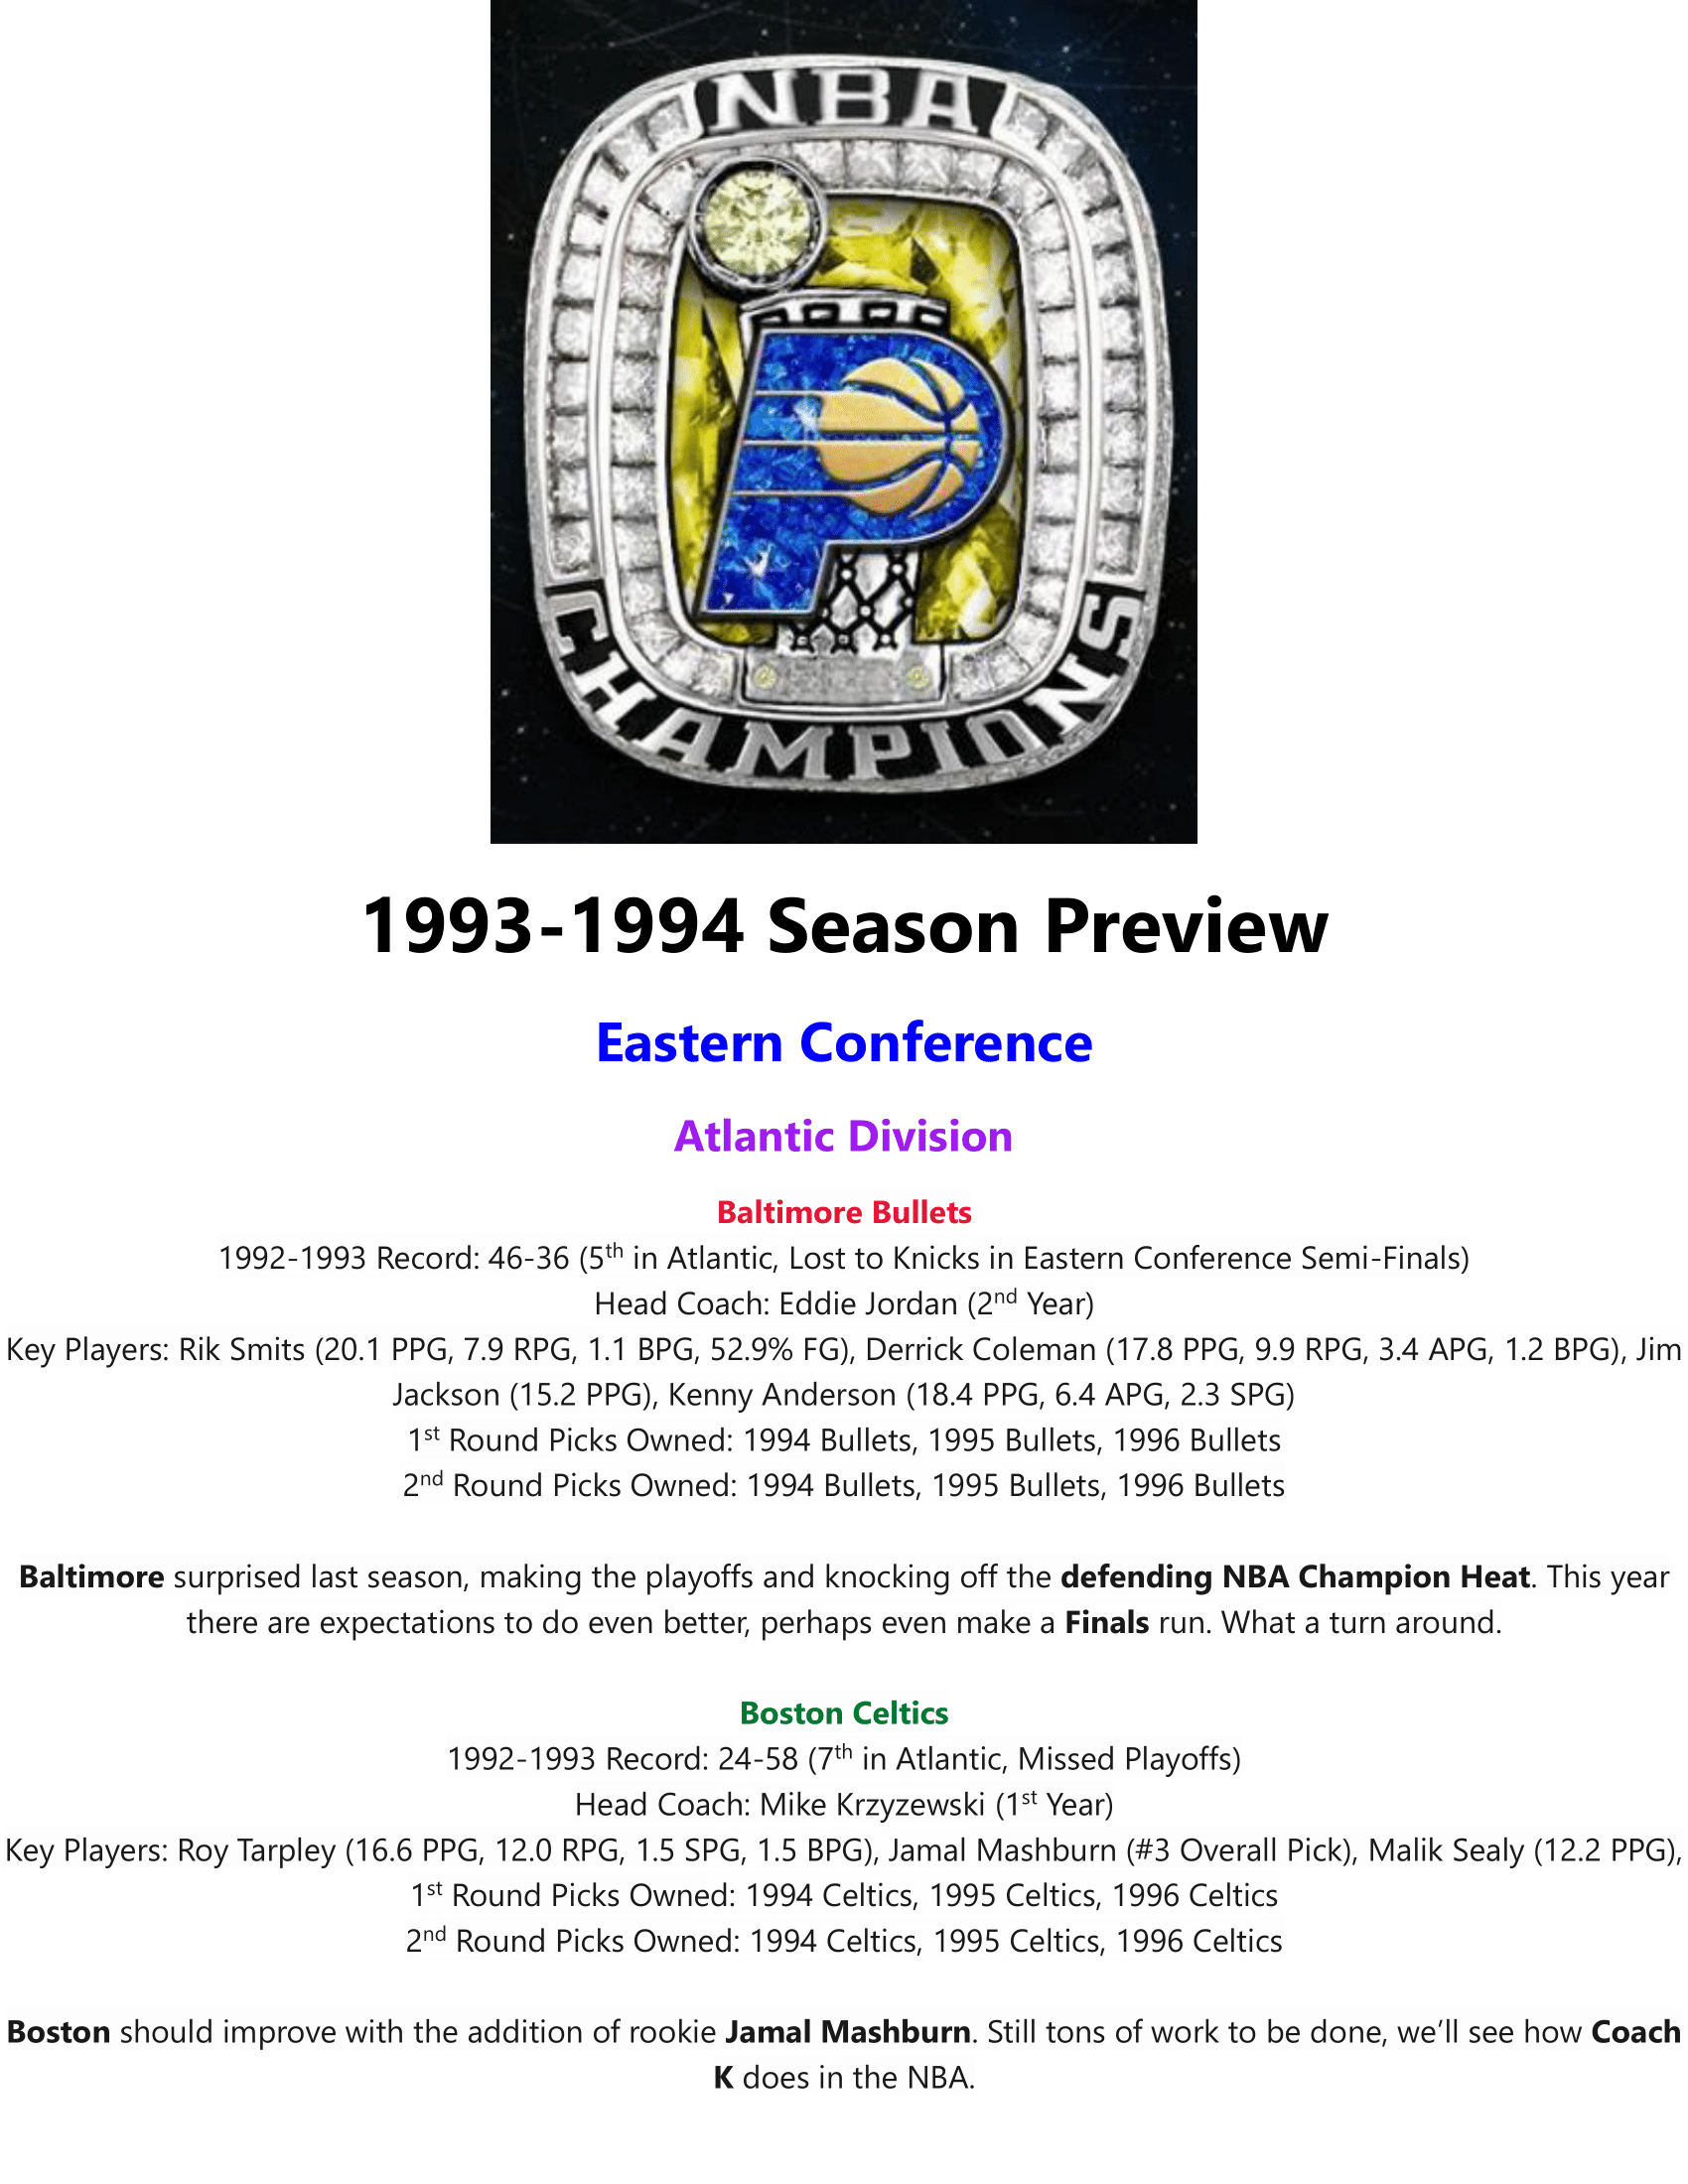 93-94-Season-Preview-01.png